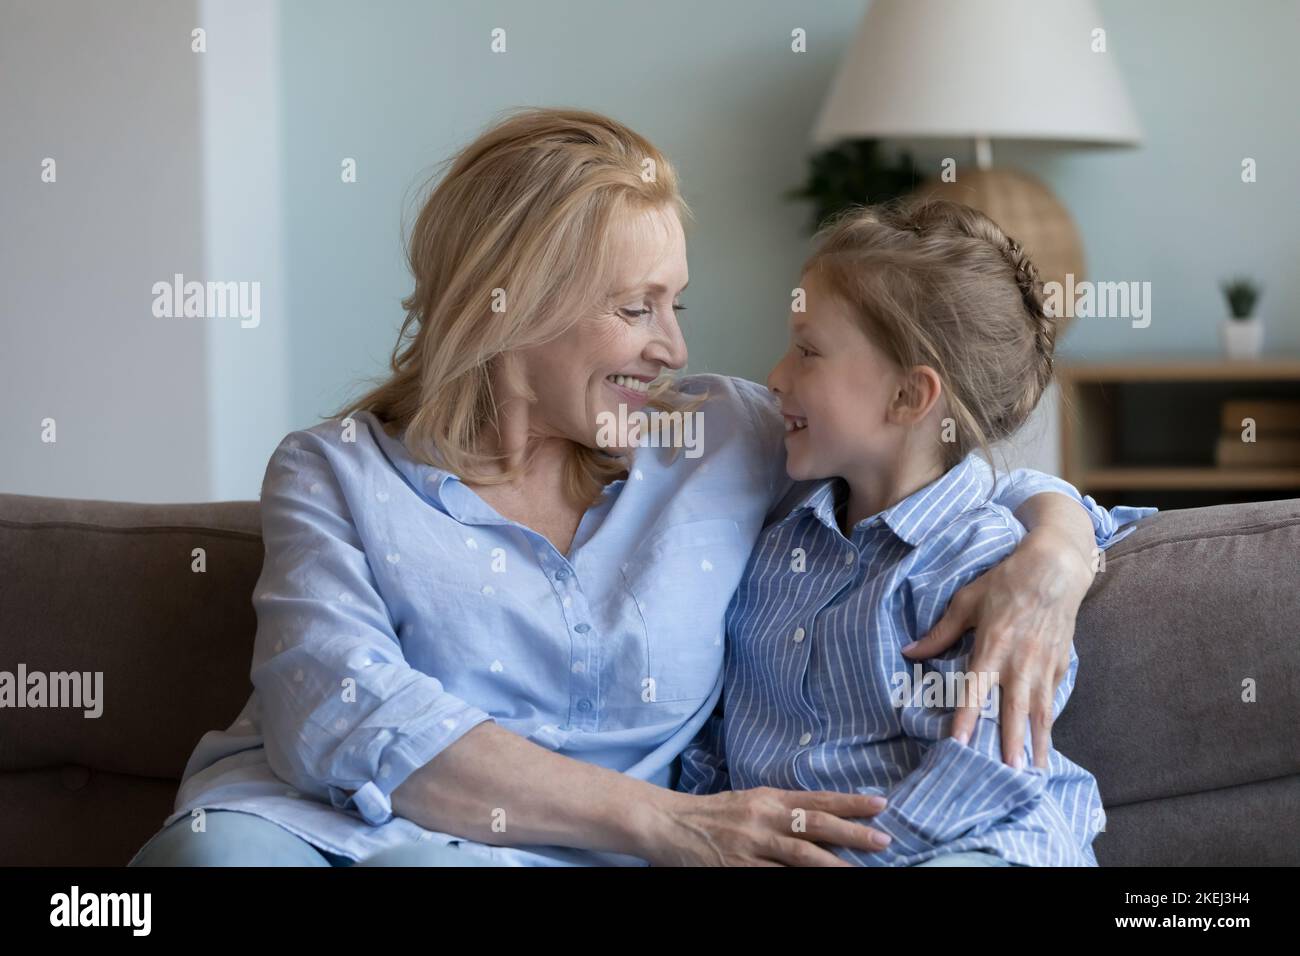 La abuela de mediana edad abraza a su nieta sentada en un sofá Foto de stock